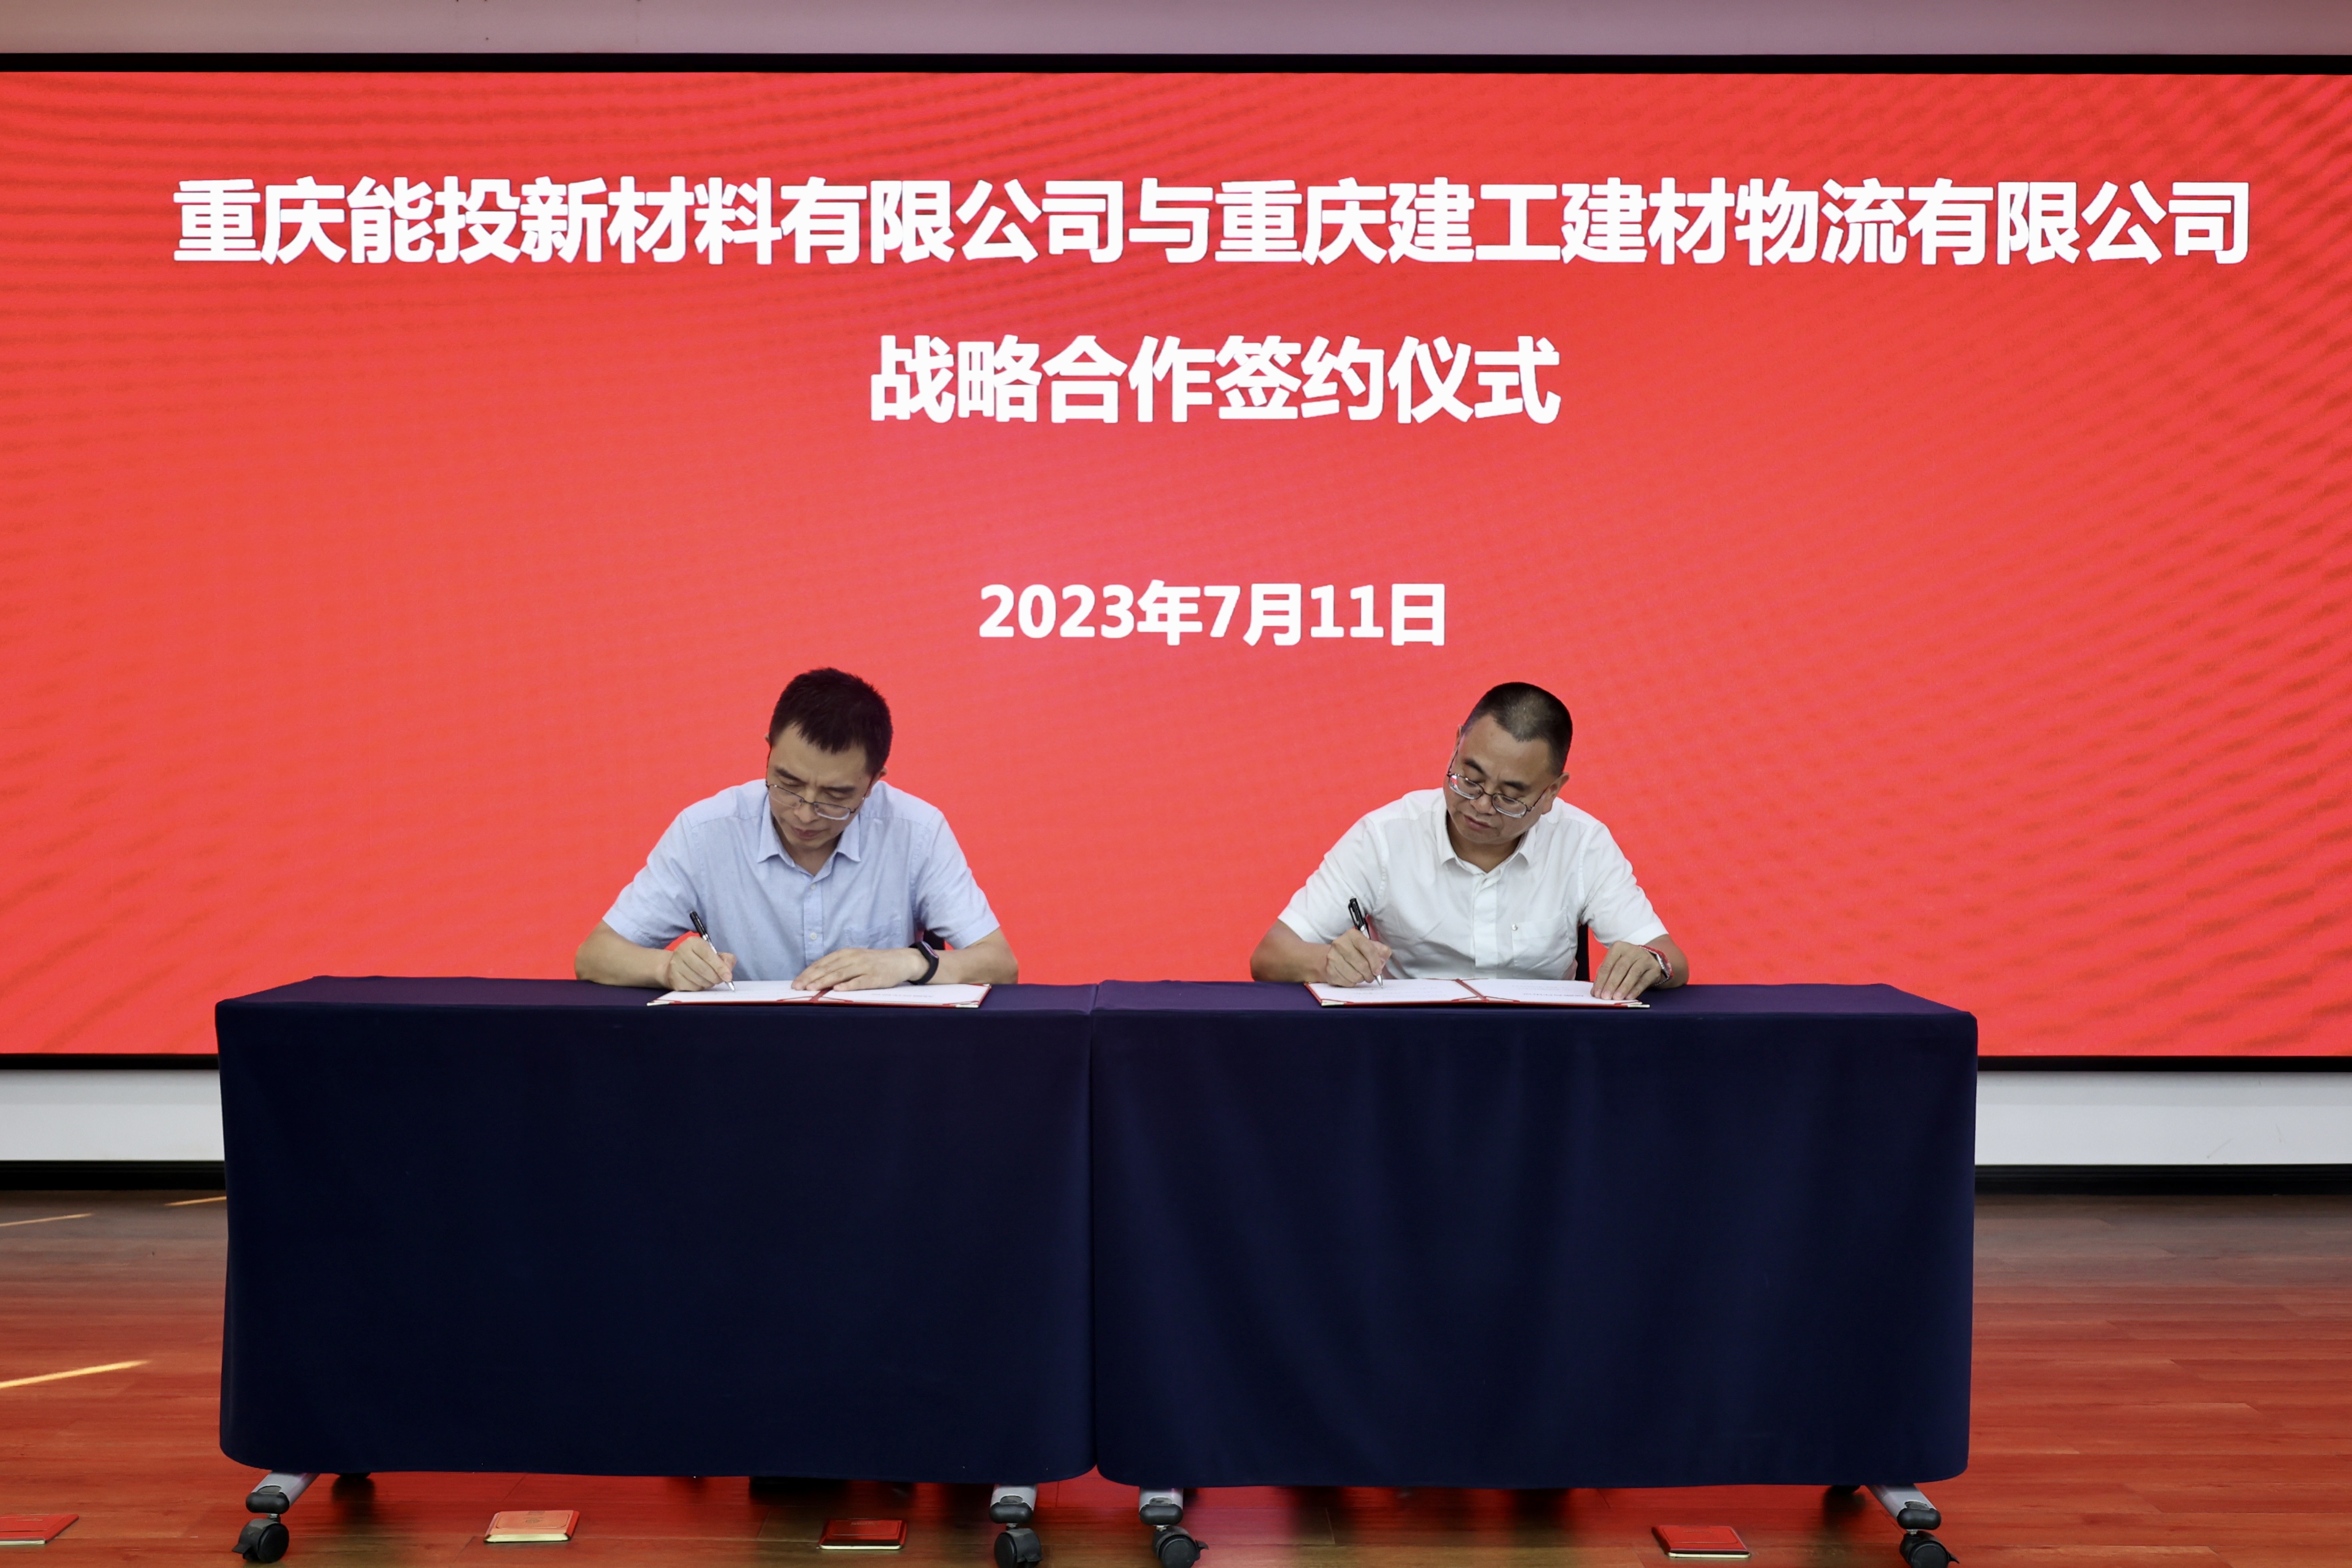 建材物流公司与重庆能投新材料公司战略合作签约仪式成功举行